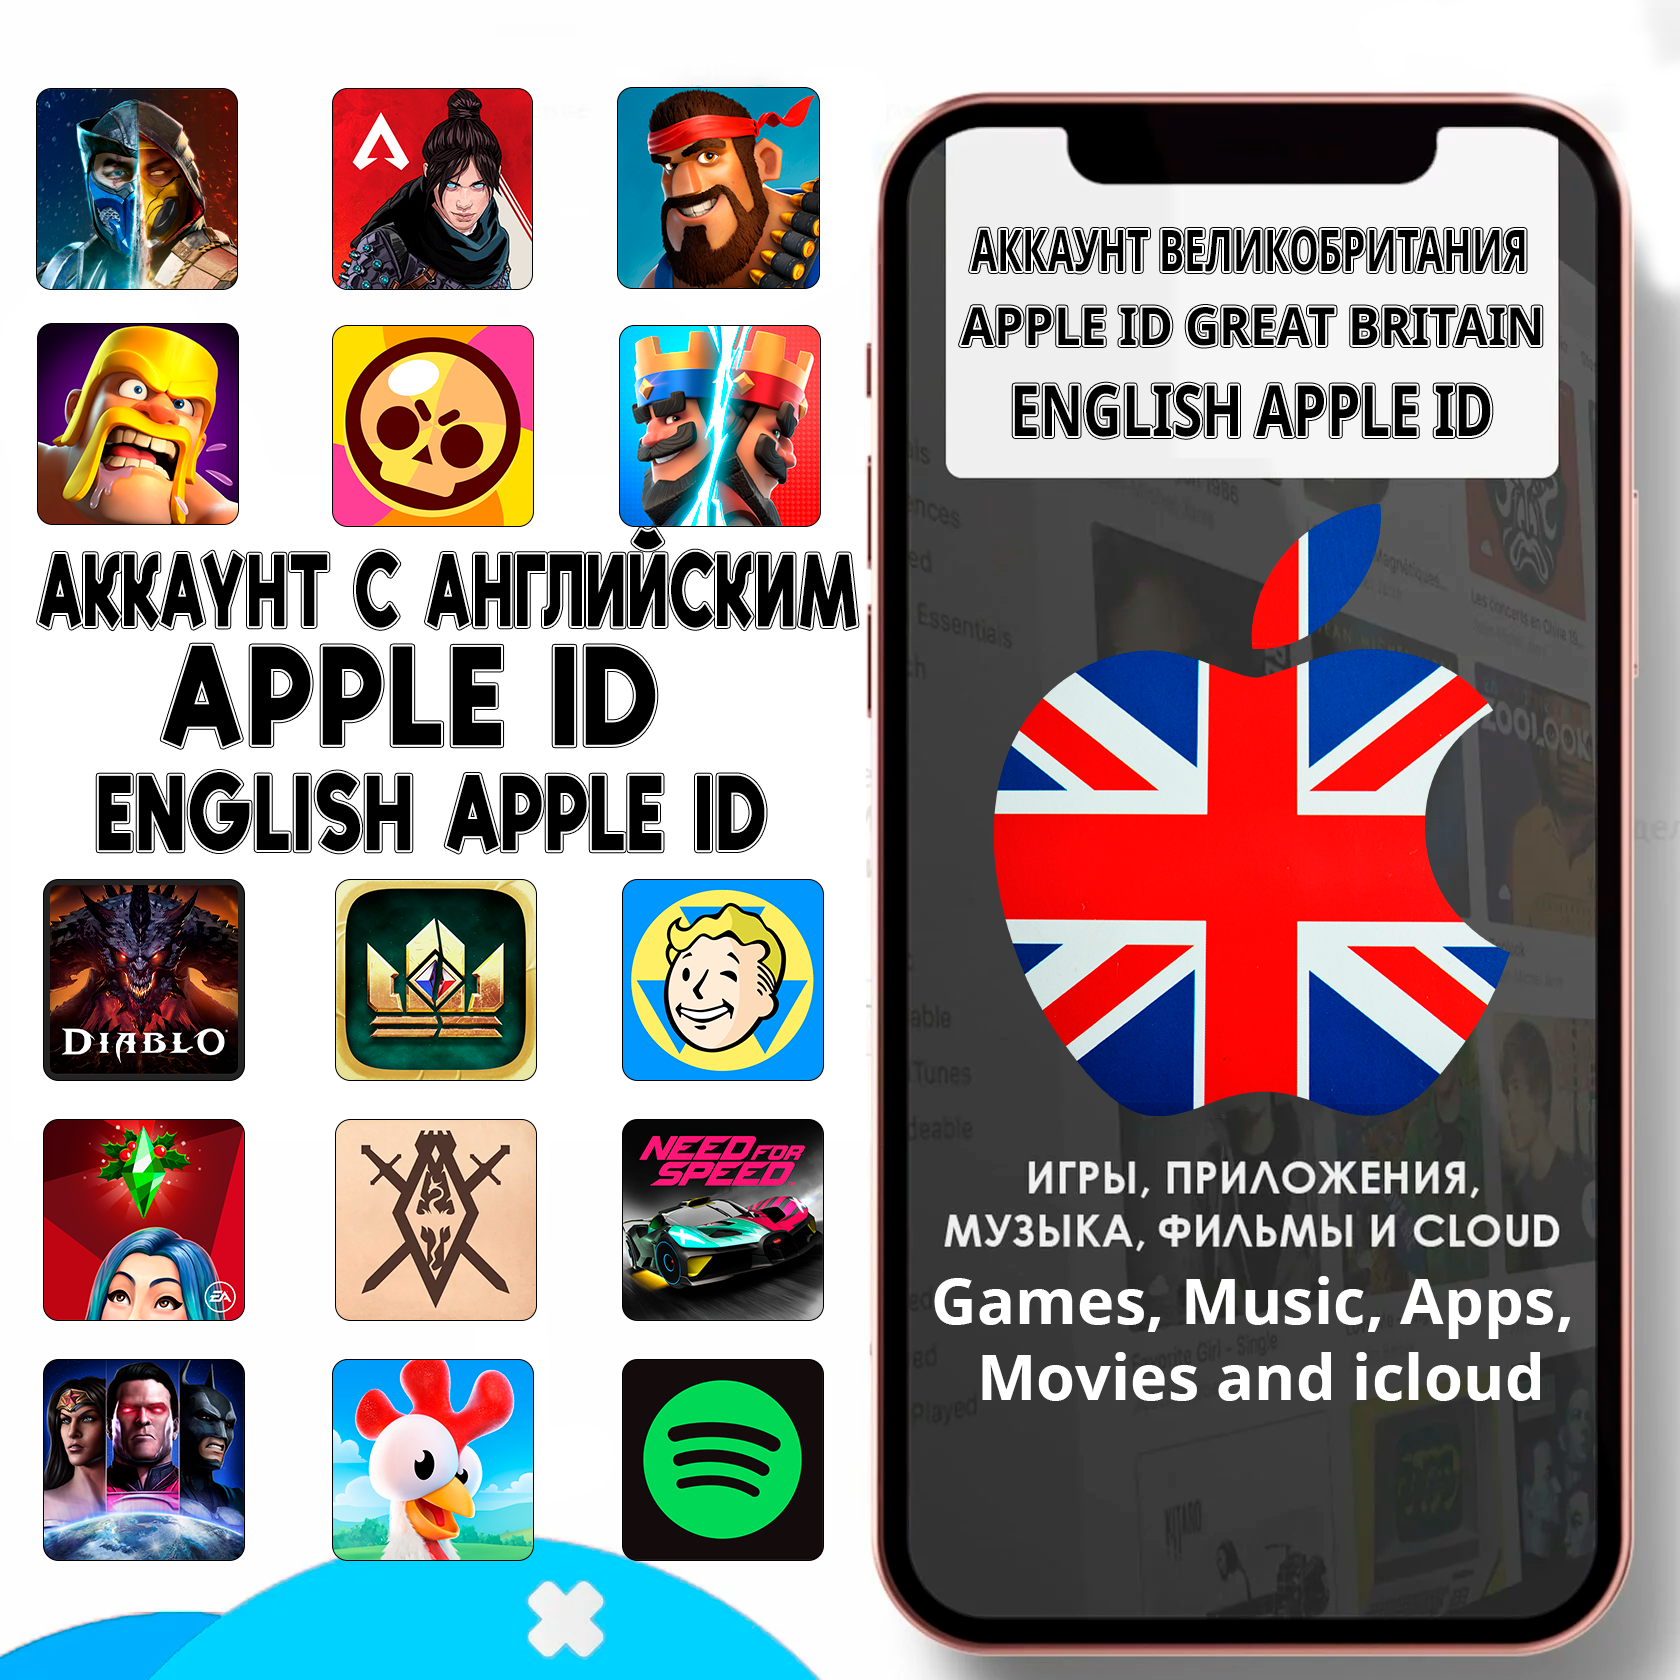 Купить аккаунт на айфон. Великобритания аппсторе. Великобритания app Store. Apple на английском. Американский профиль апстор.